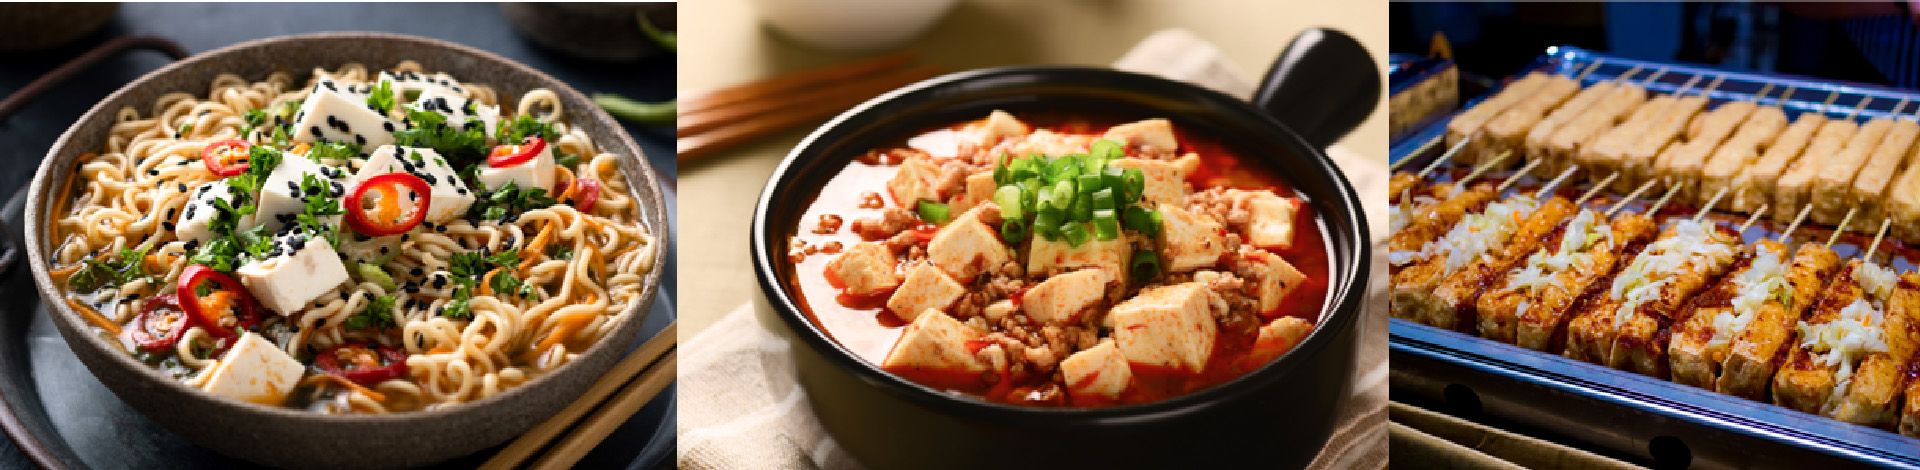 Različite vrste tofua imaju različitu teksturu, čvrstoću i različite primjene u obrocima na vašem stolu, Yung Soon Lih (eversoon) tofu stroj za izradu može biti društven s opcionalnim uređajem za proizvodnju ekstra čvrstog tofua i azijskog svilenkastog tofua.